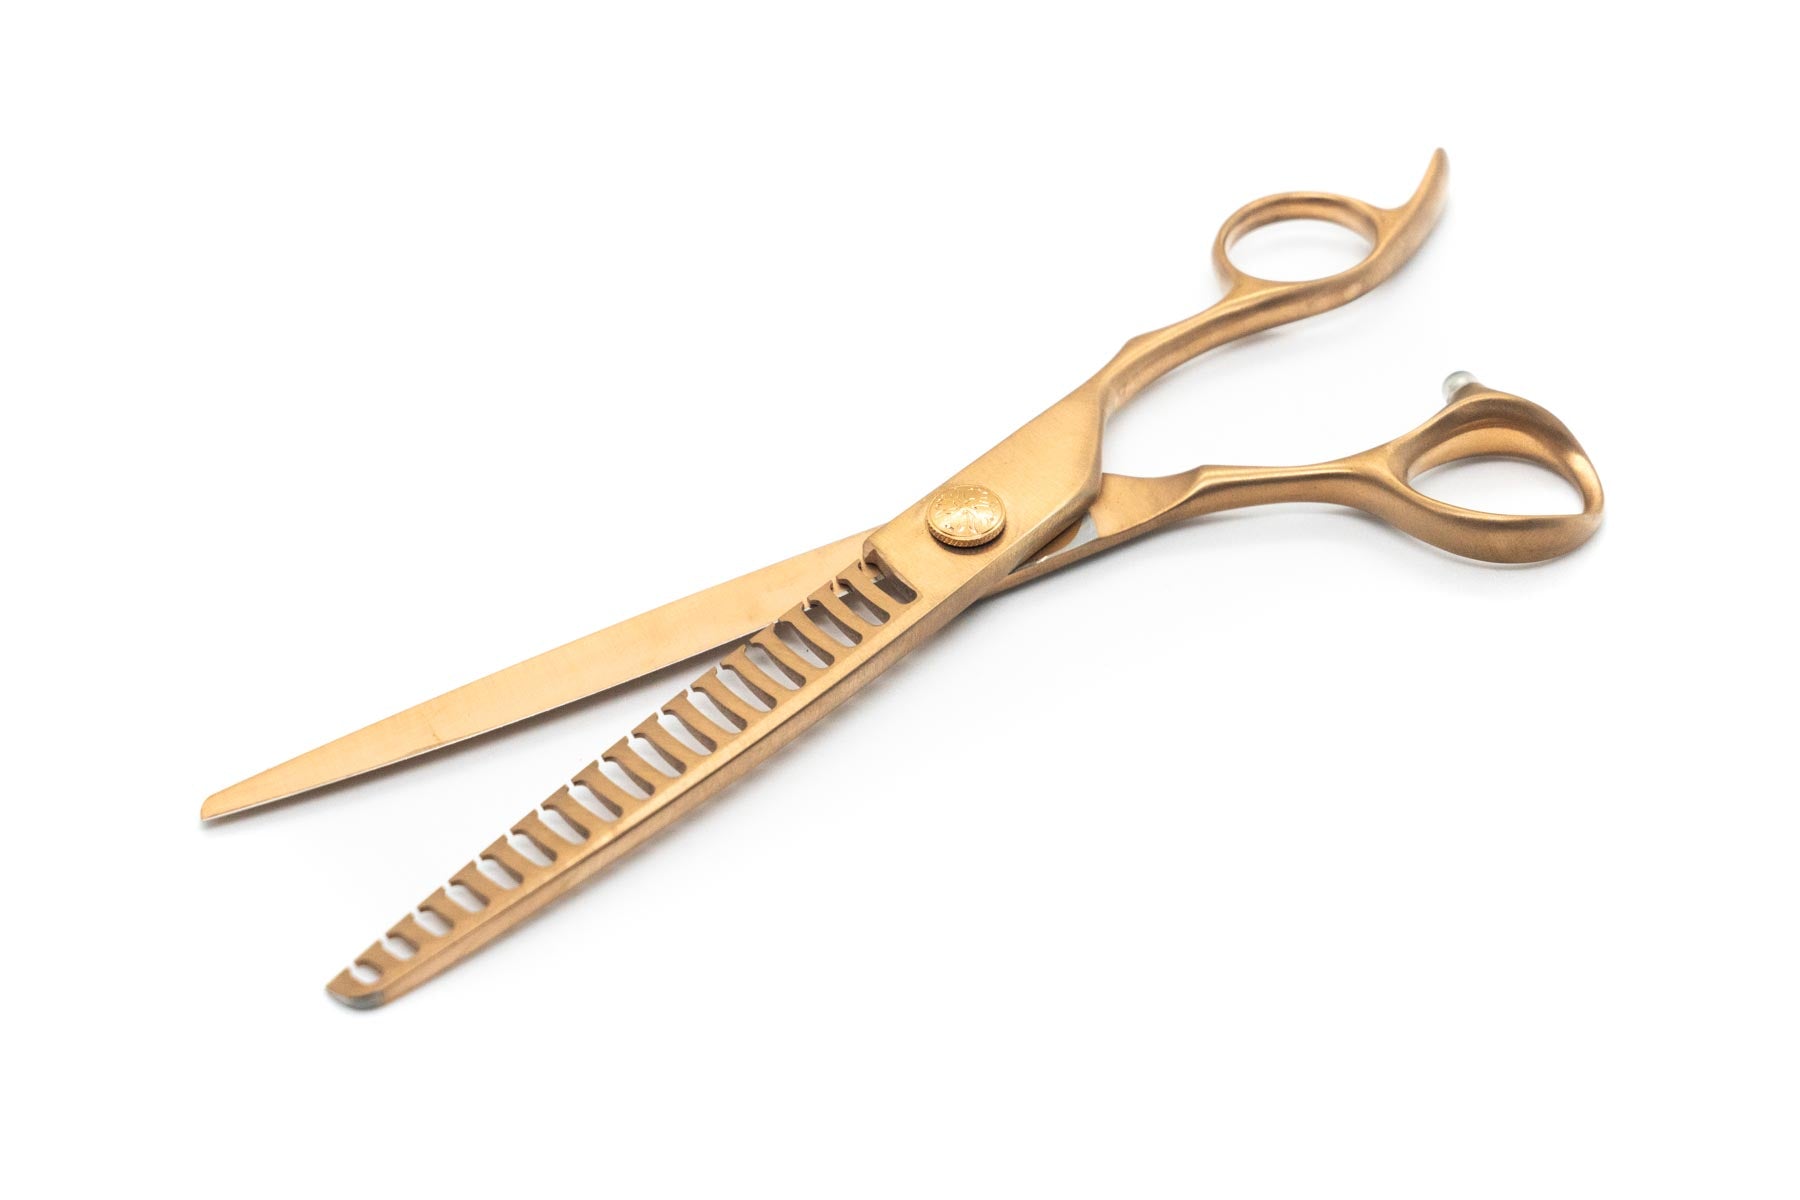 Aspen Lt Rose Gold Pet Grooming 7.5 inch 'CHUNKER' Thinning Scissor